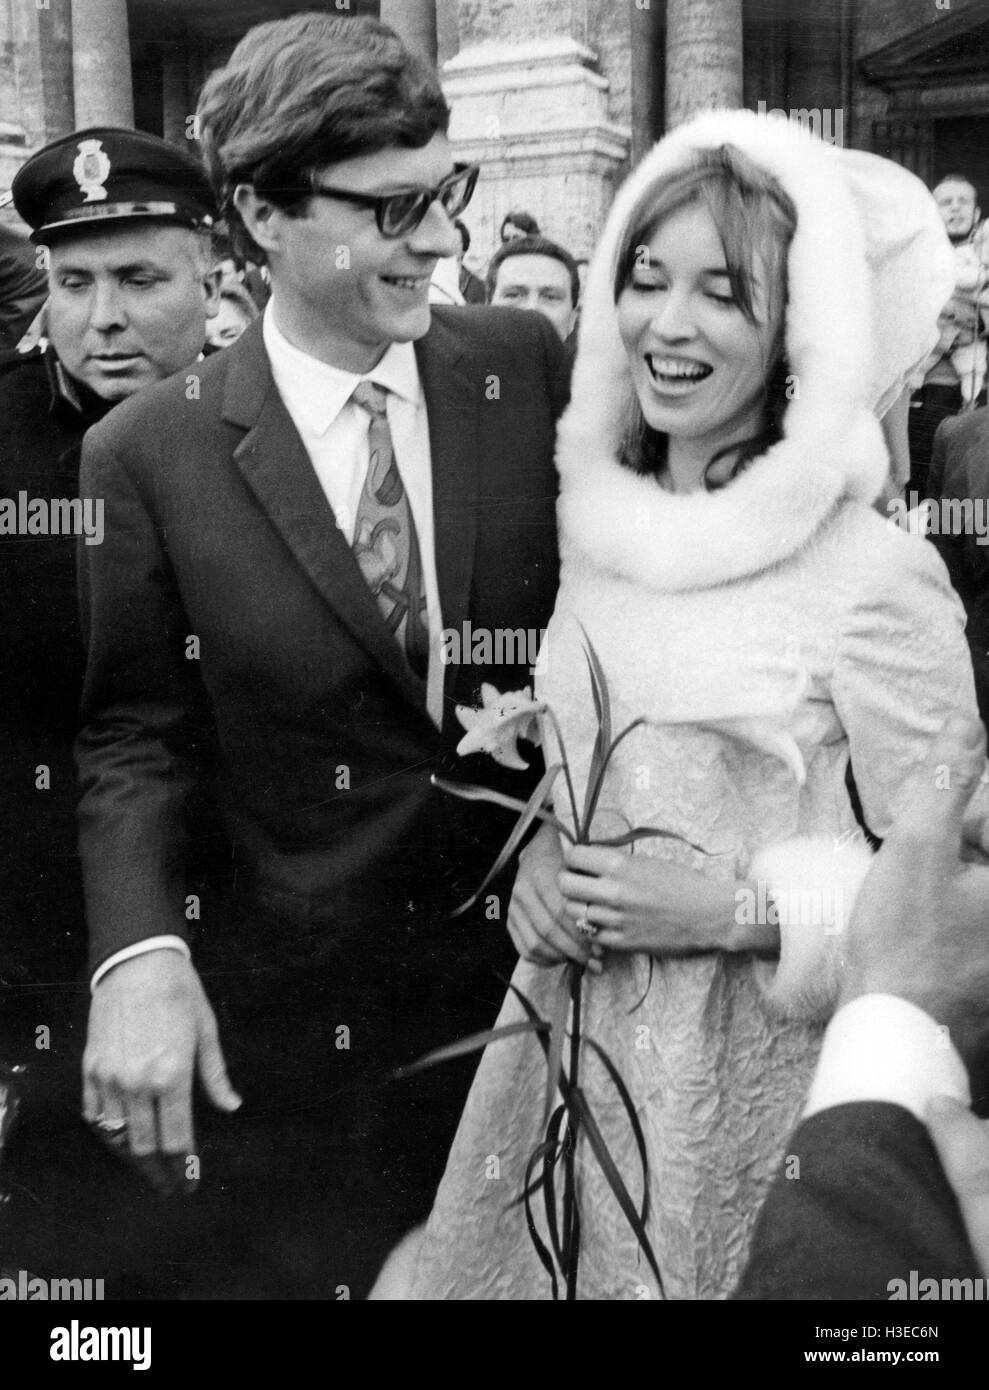 TALITHA POL épouse John Paul Getty Jr à la salle de la capitale à Rome le 10 décembre 1966 Banque D'Images